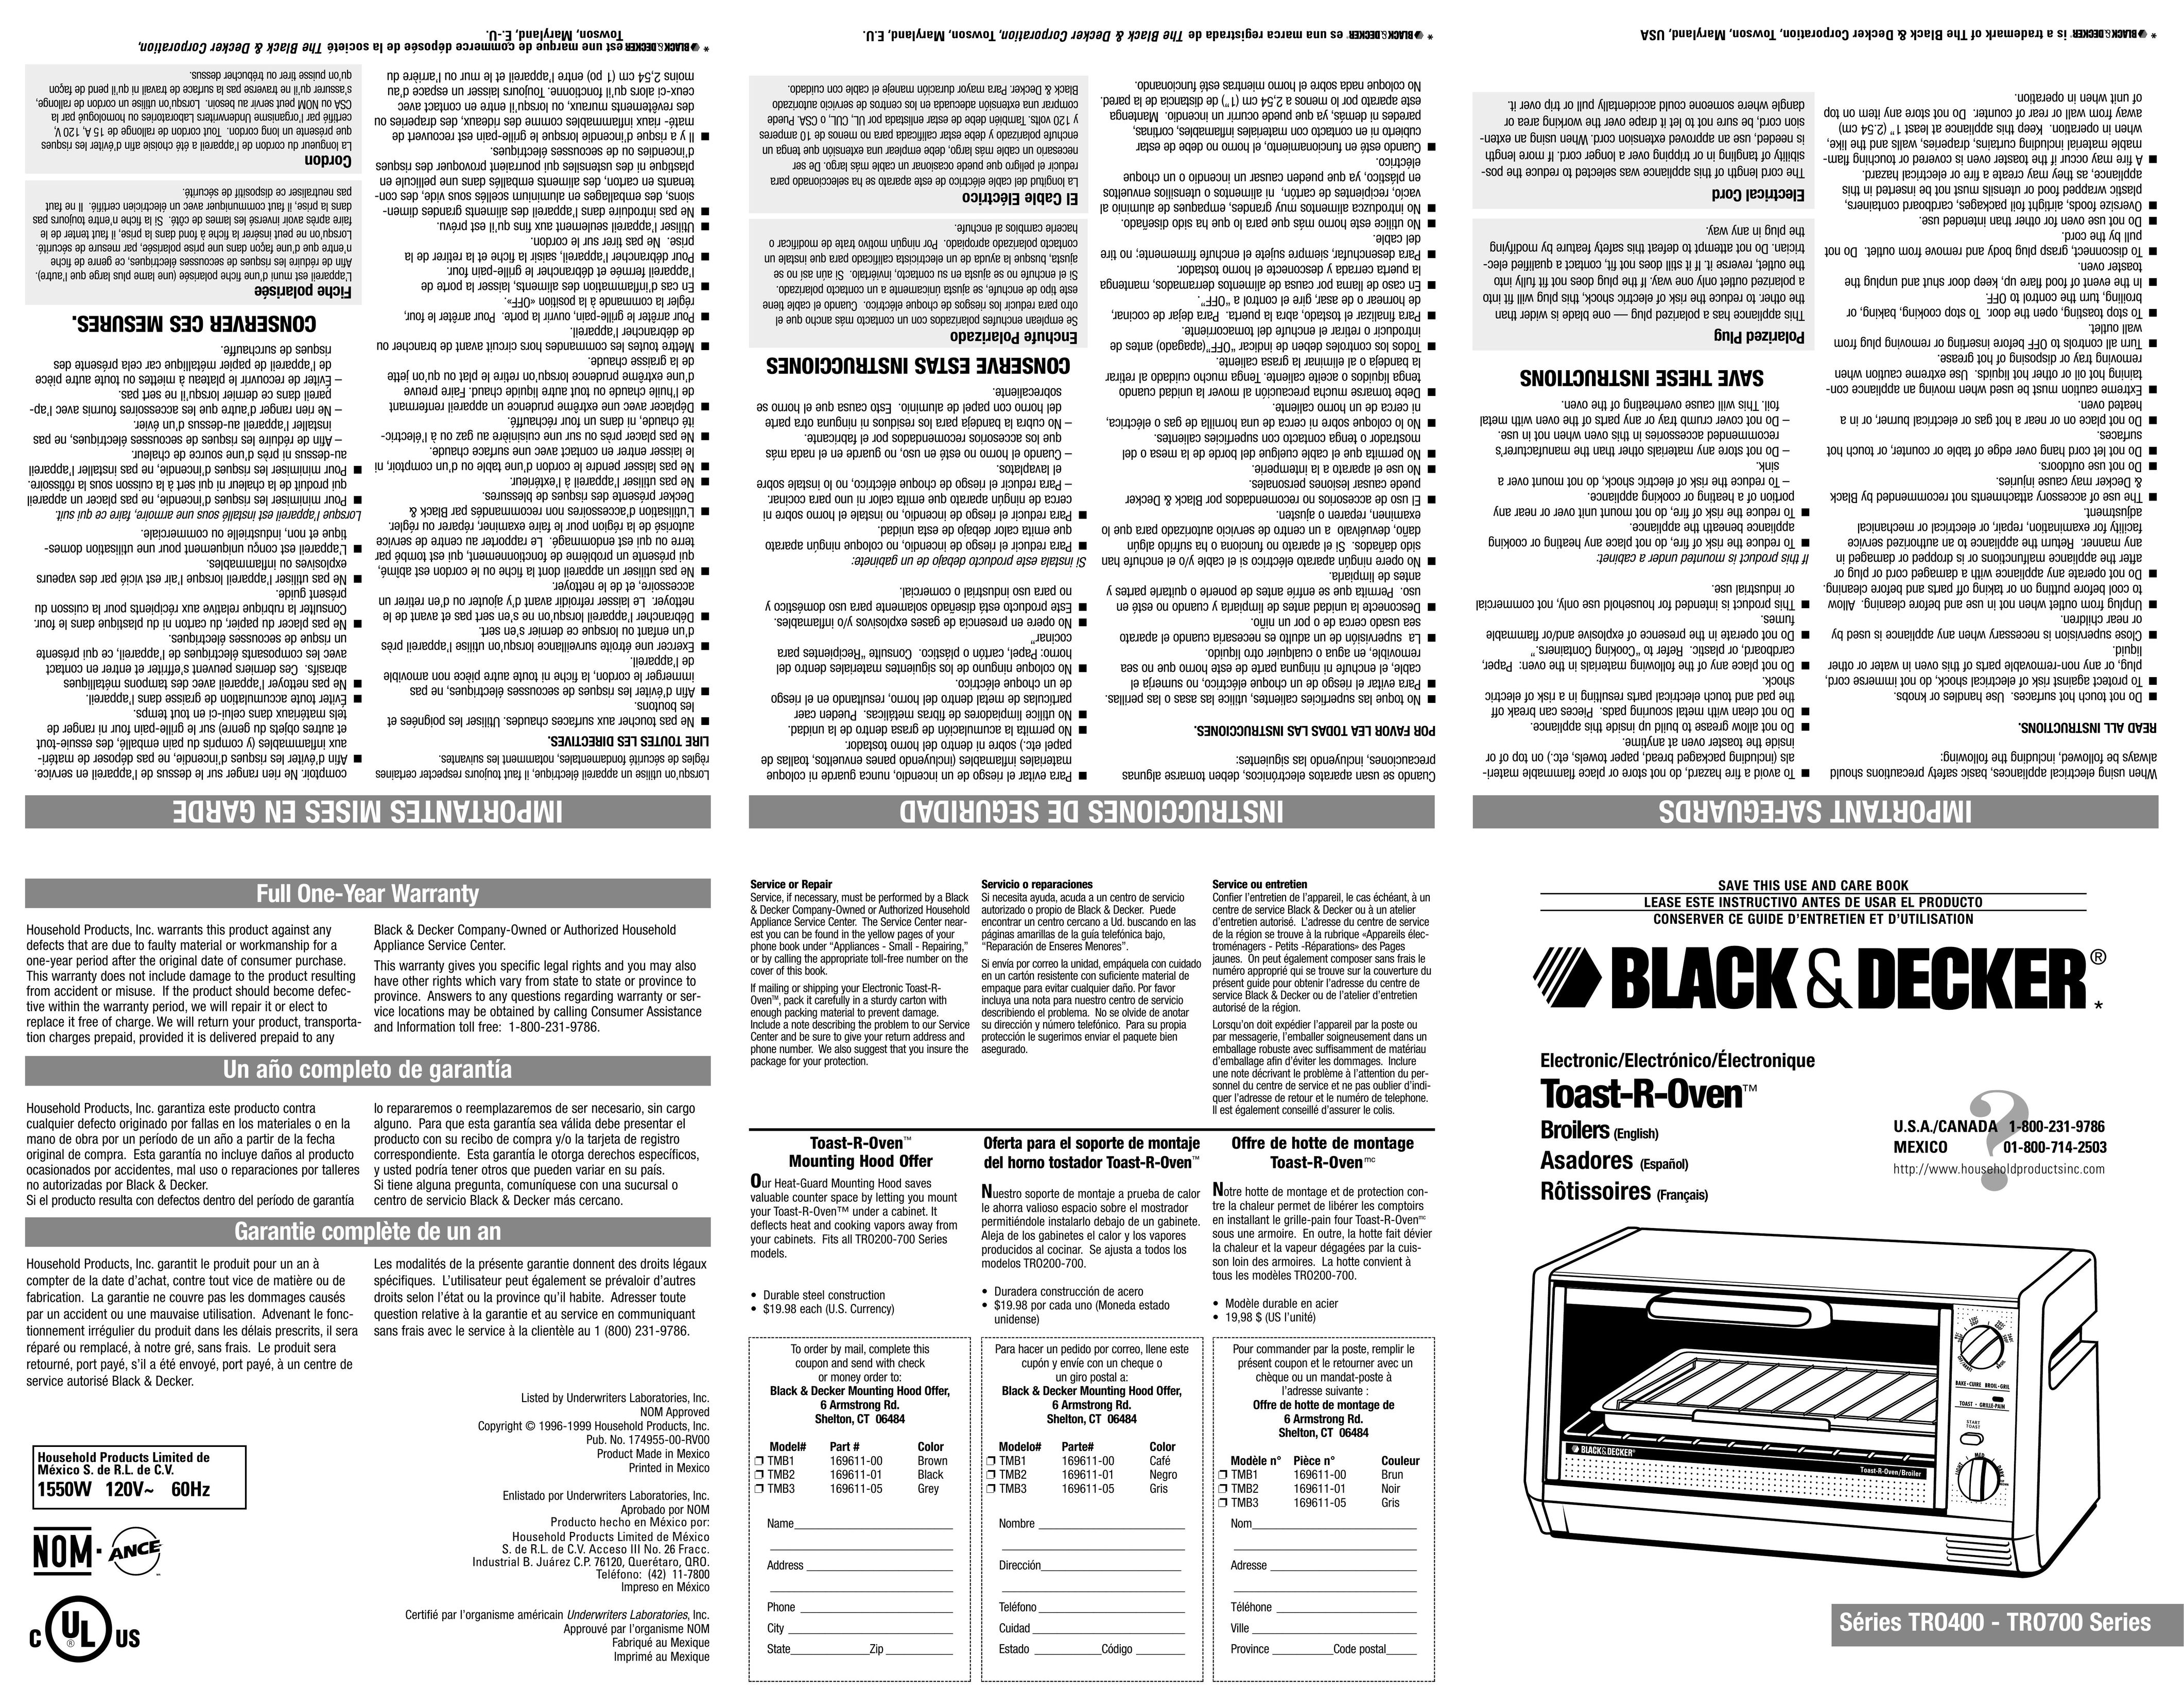 Black & Decker TRO400 Oven User Manual